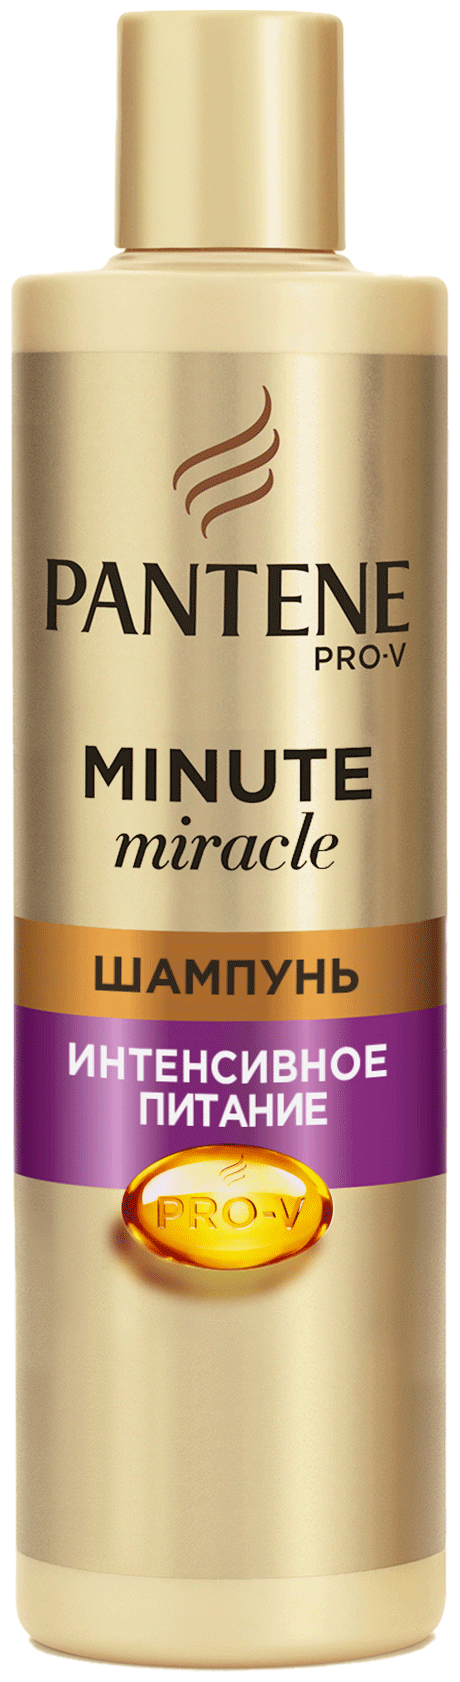 Шампунь для сухих или тусклых волос Pantene Pro-V кератин-реконструктор Minute Miracle Интенсивное питание, 270 мл